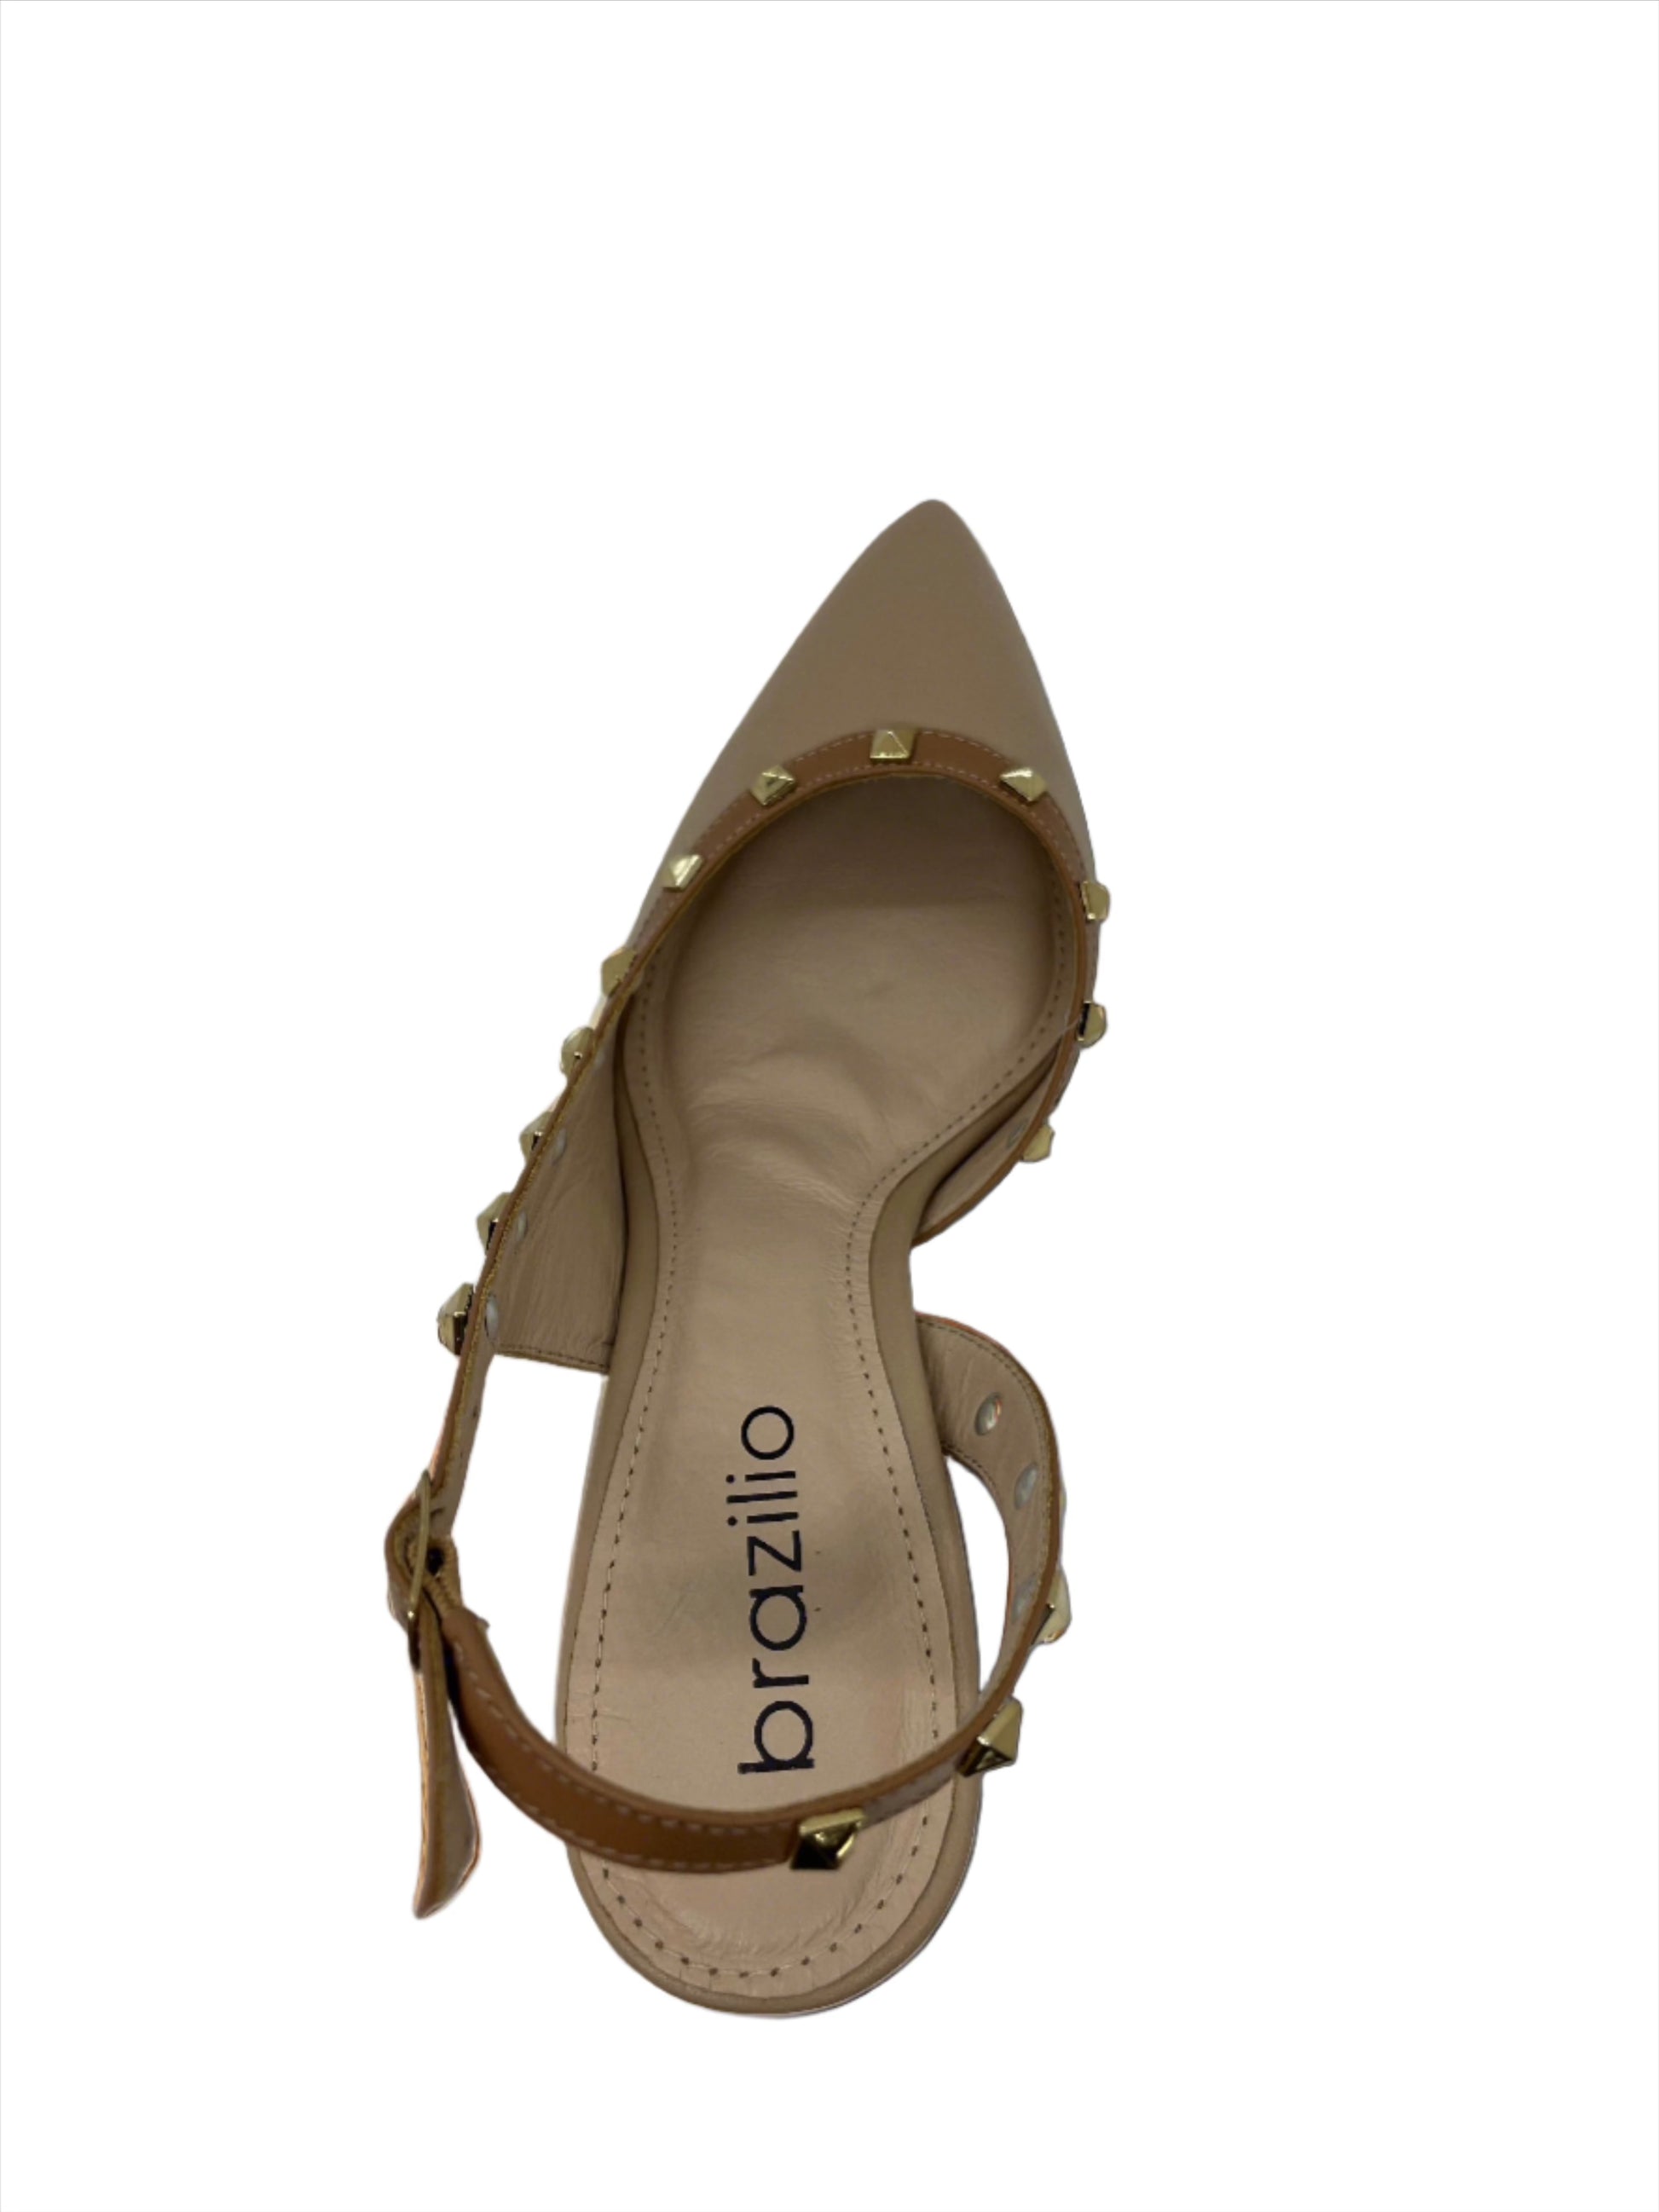 LINDY STRAPPY HEEL -  - 1300589, womens footwear - Stomp Shoes Darwin